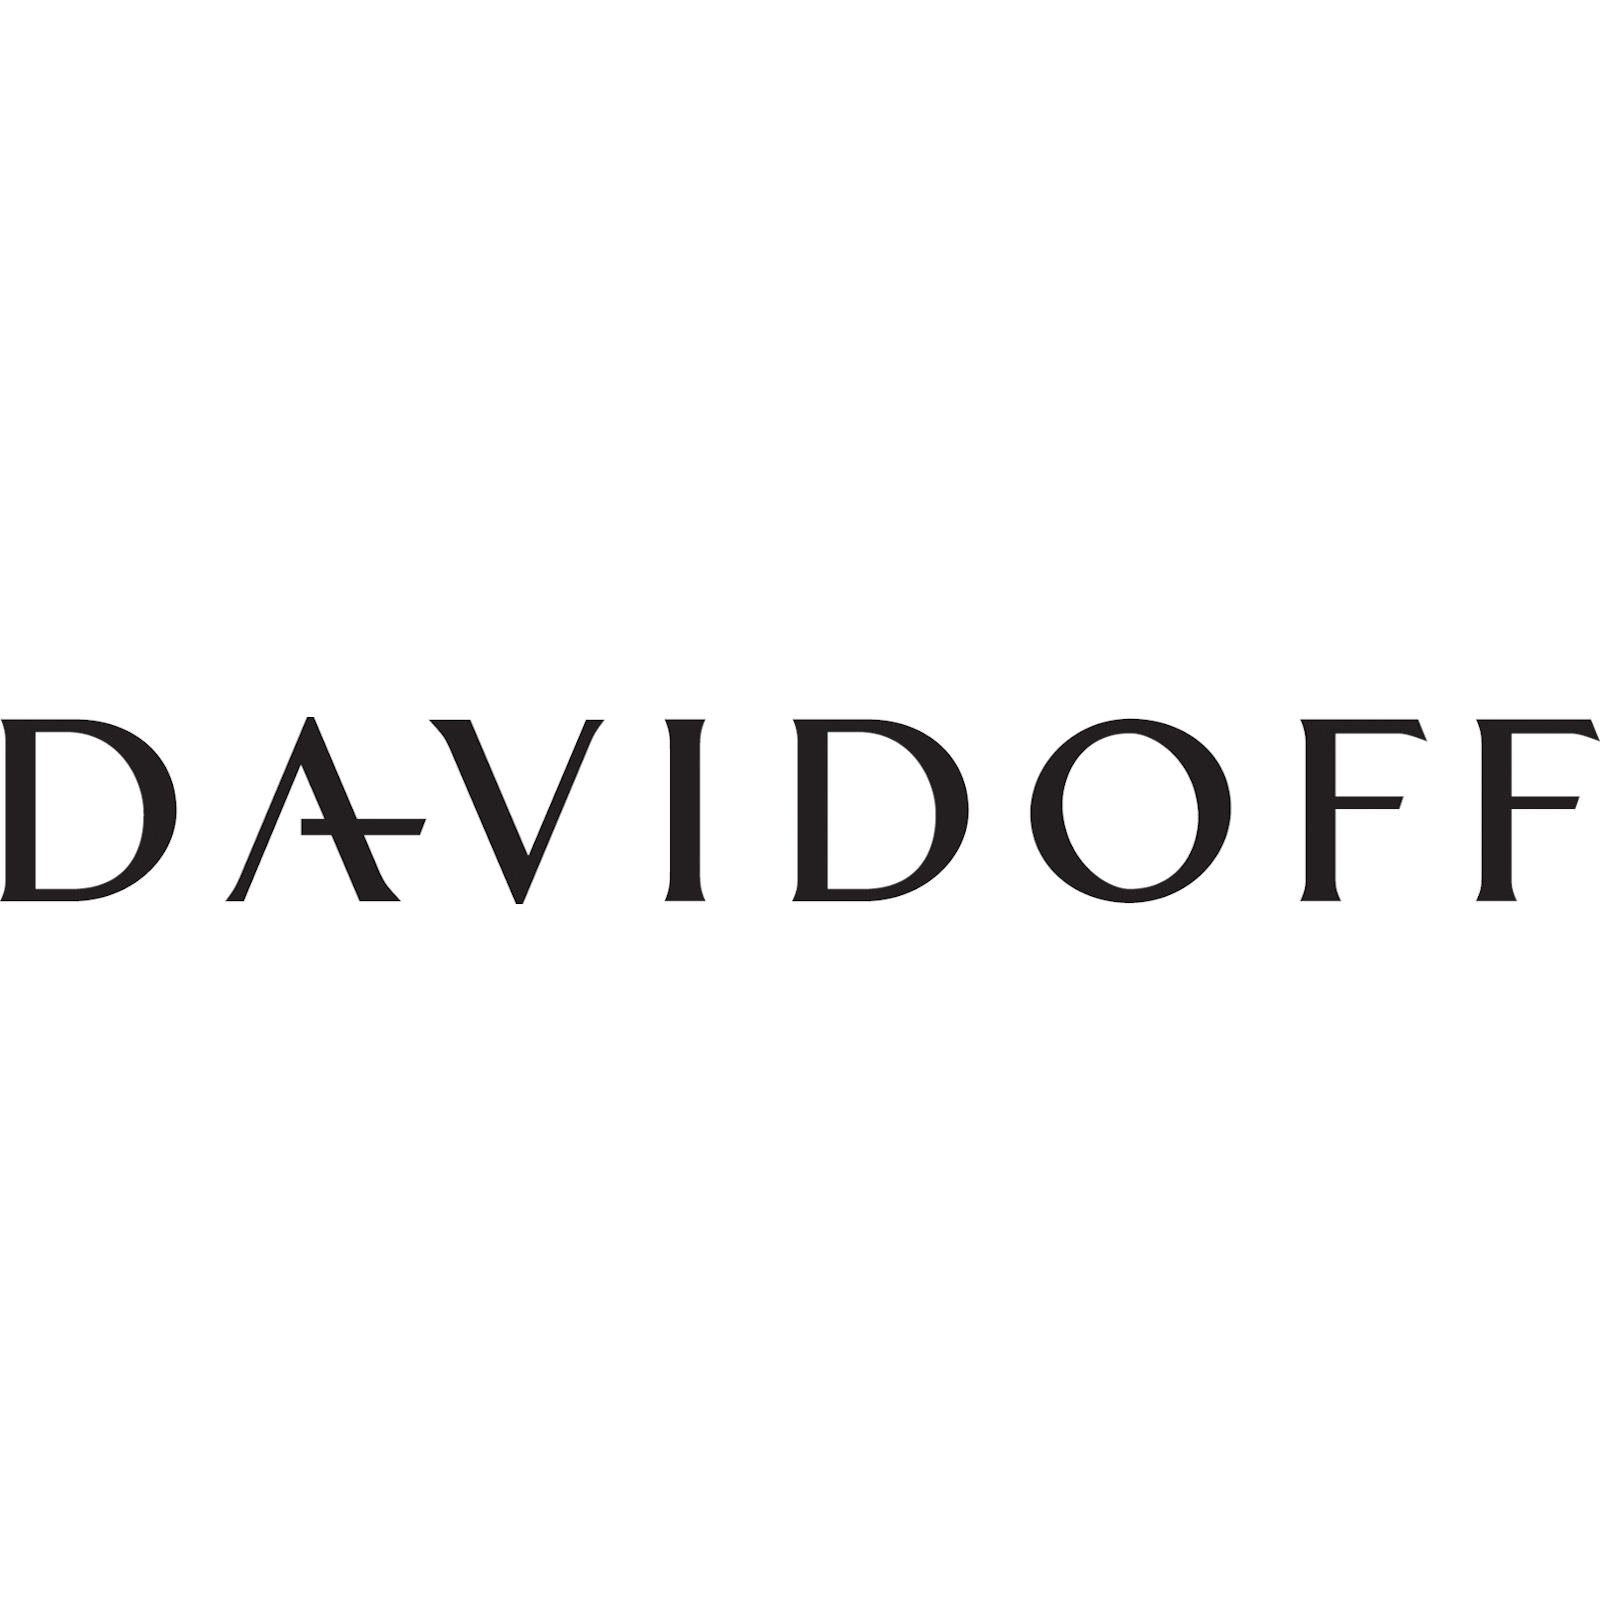 Brieftasche DAVIDOFF Kreditkartenetui Geldbörse Essentials kleine Braun Davidoff 22852